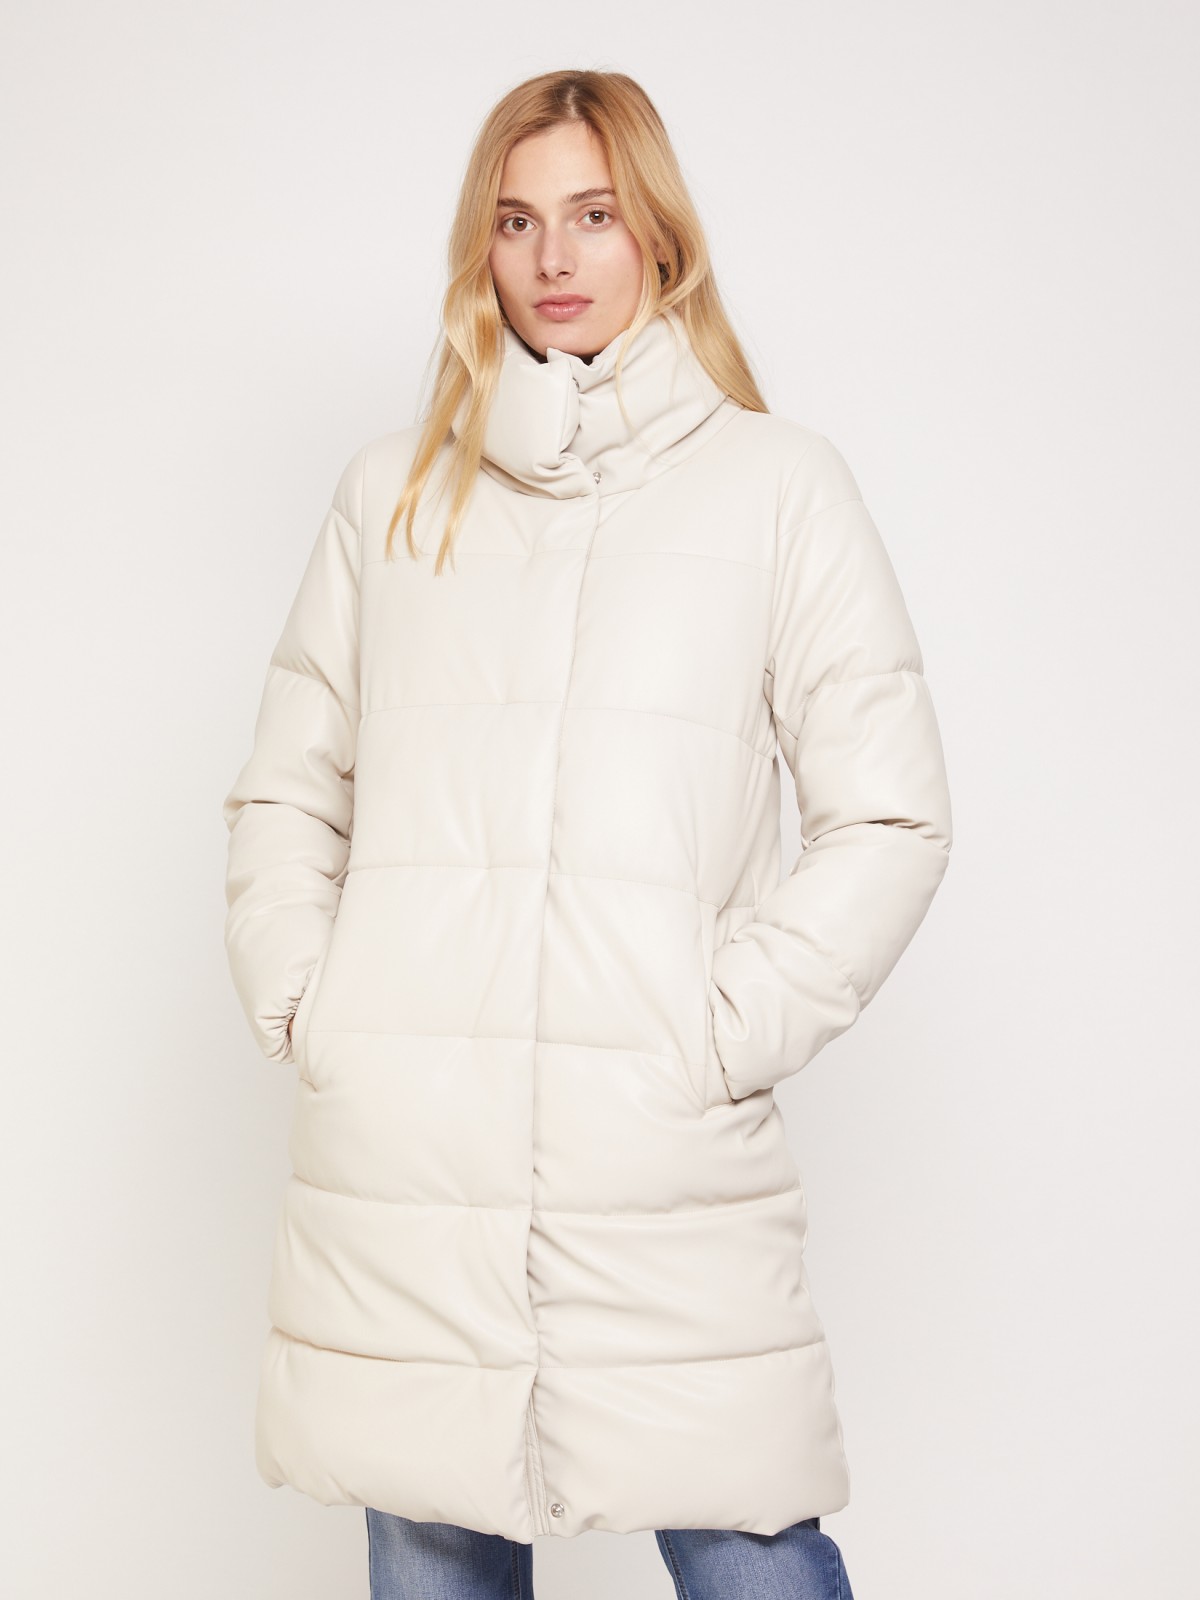 Тёплое пальто из экокожи zolla 021345250184, цвет молоко, размер XS - фото 2